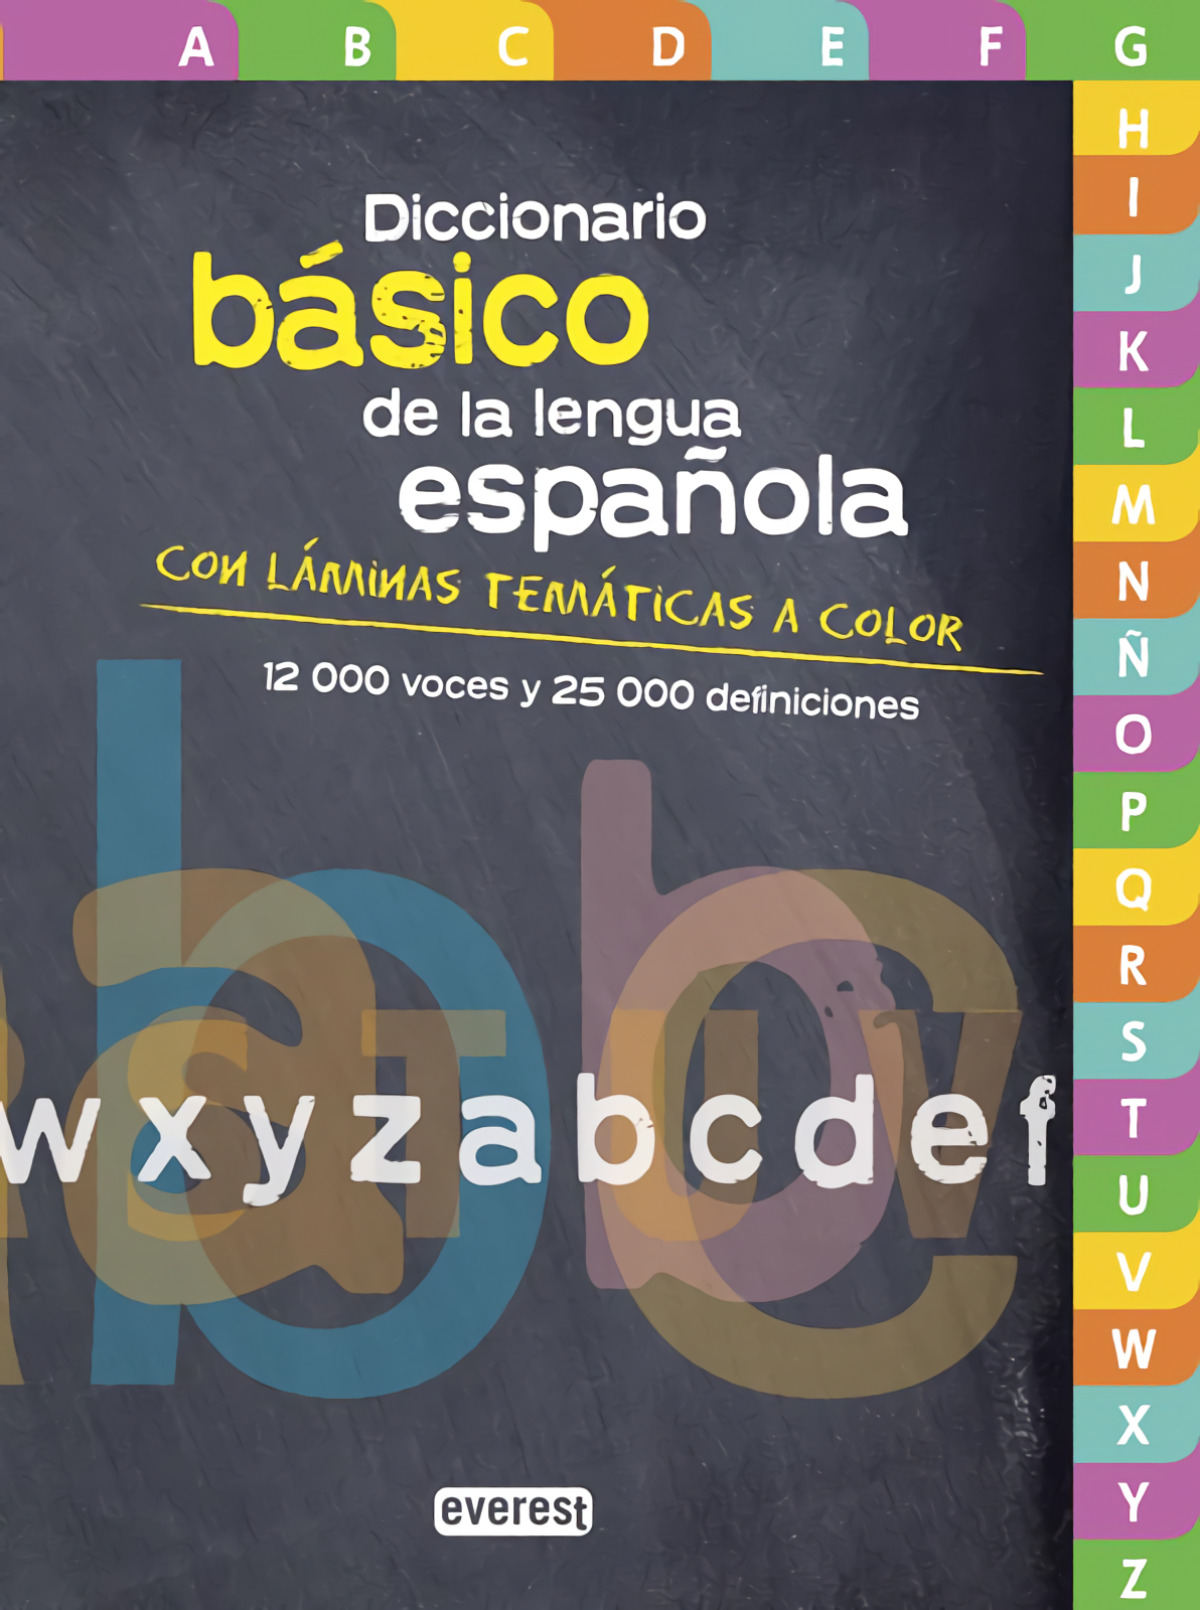 Diccionario Básico de la lengua española - Equipo Lexicográfico Everest